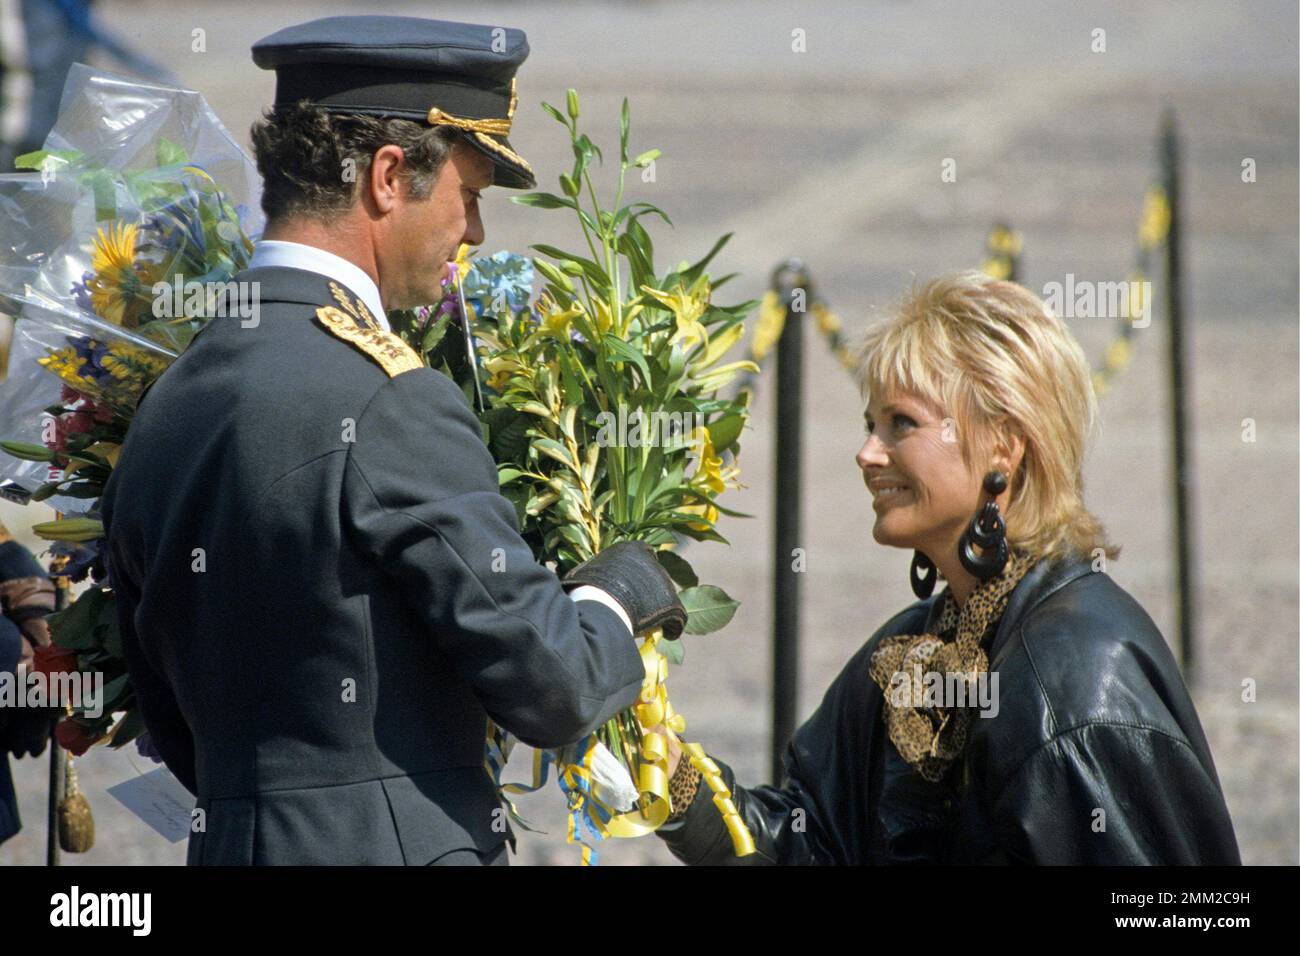 Carl XVI Gustaf, roi de Suède. Né le 30 avril 1946. Le roi Carl XVI Gustaf a reçu un bouqet de fleurs de l'actrice suédoise Britt Ekland le jour de son anniversaire de 40th le 30 avril 1986. Banque D'Images